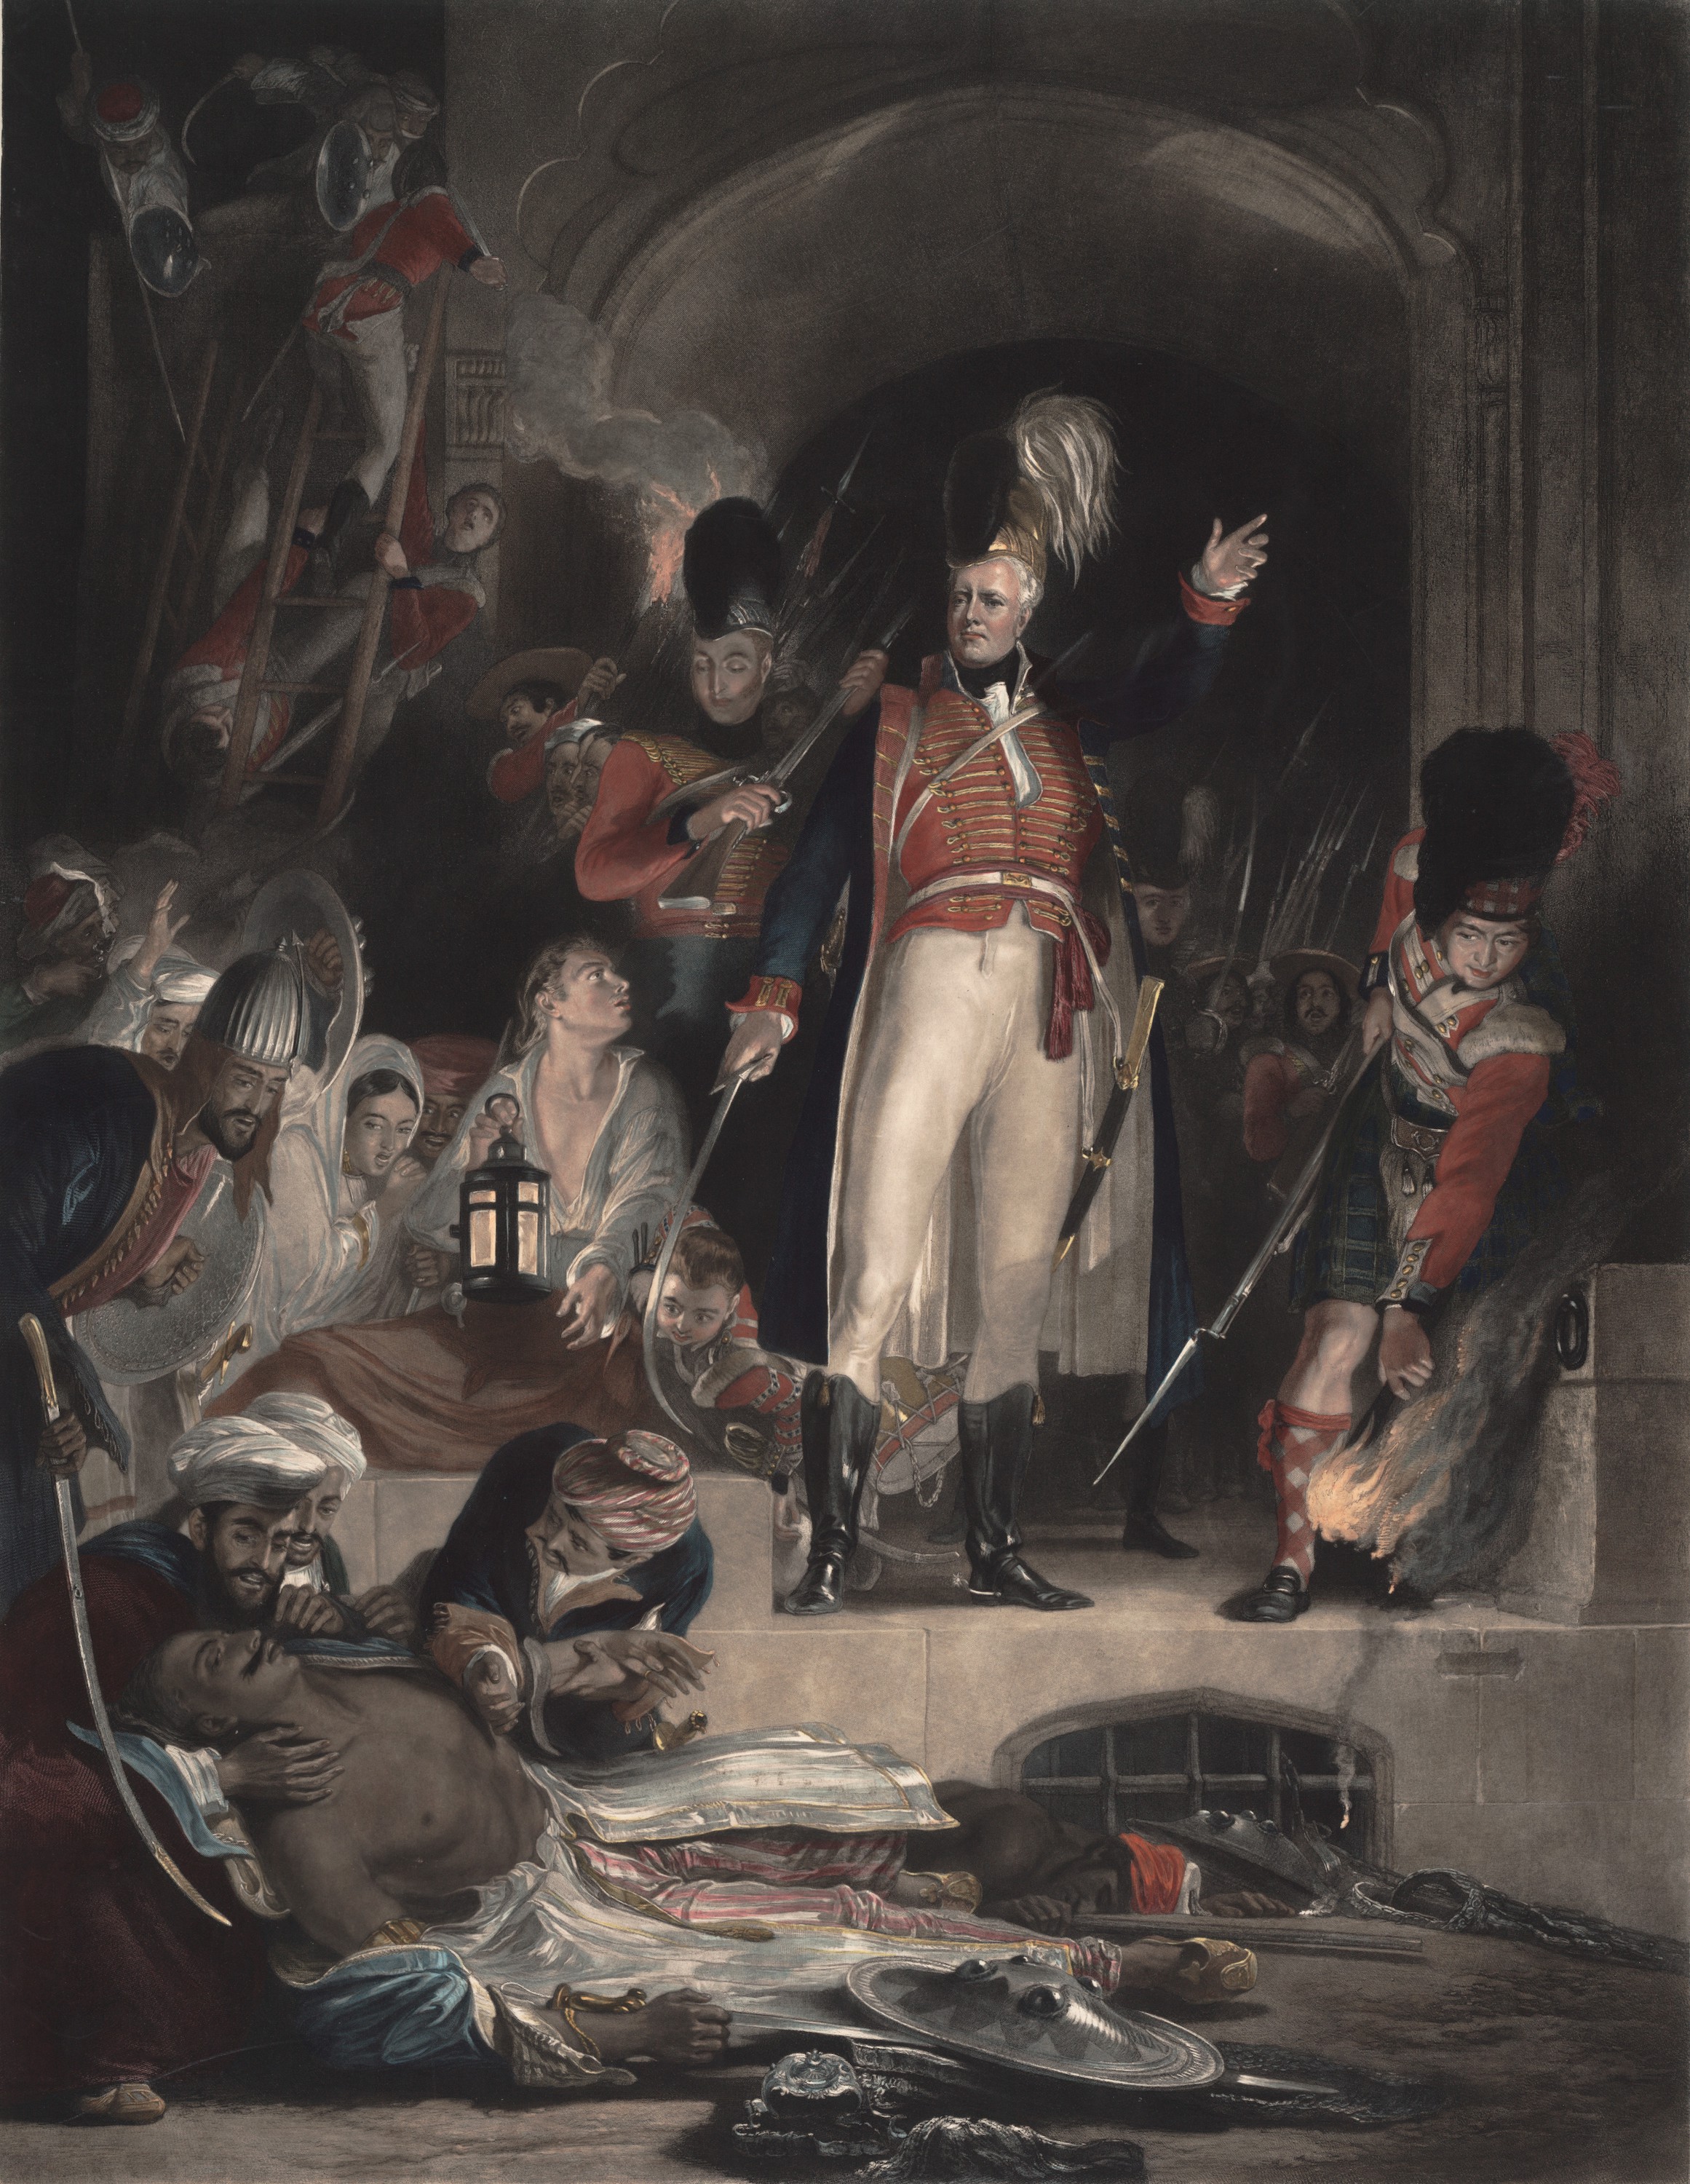 الجنرال السير ديفيد بيرد يكتشف جثة السلطان تيبو صاحب بعد أسره سيرنجاباتام ، في الرابع من مايو عام 1799 by Sir David Wilkie - م 1830 - 348.5 x 267.9 cm 